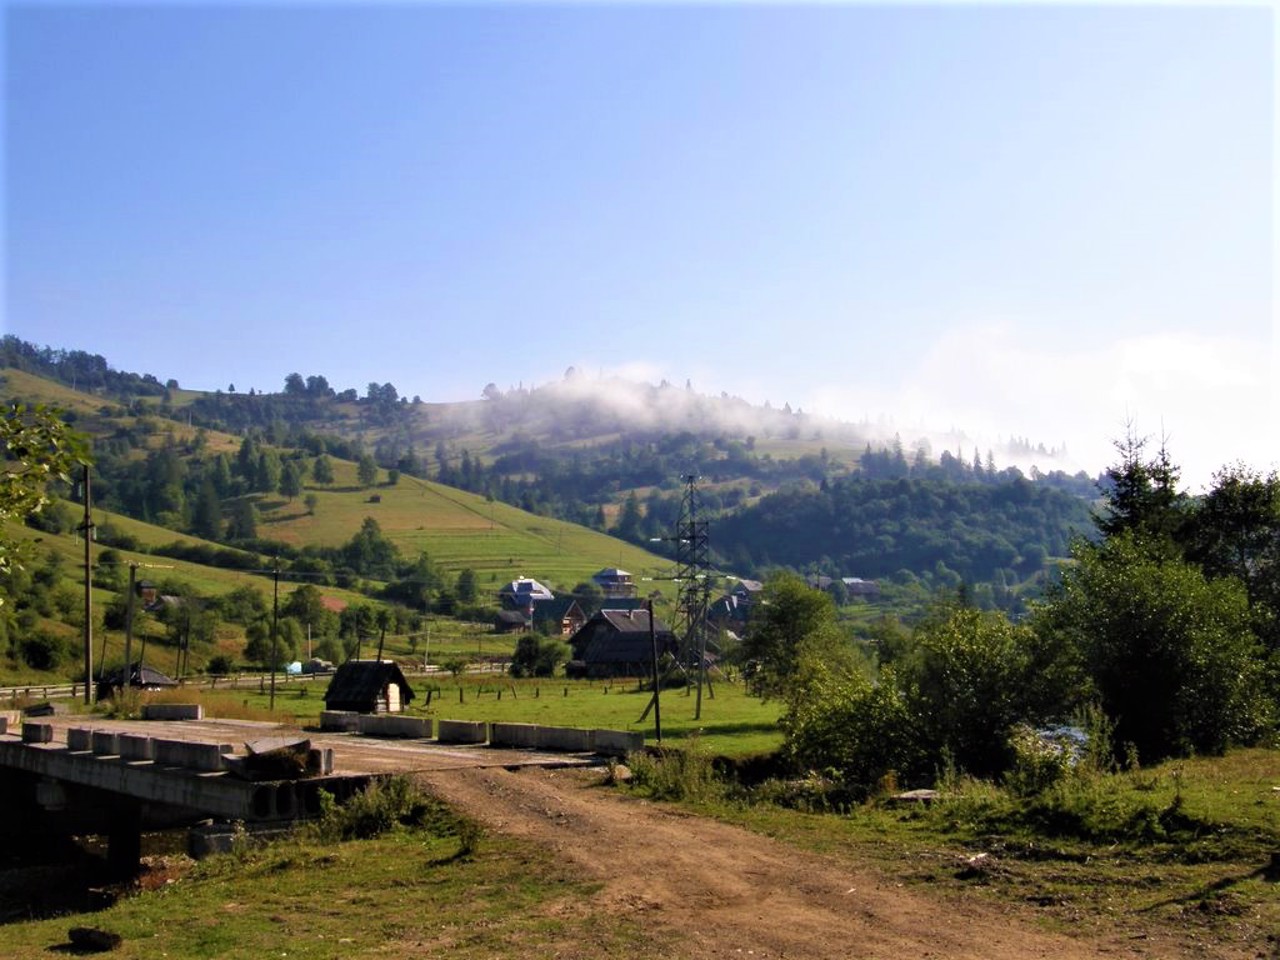 Tukhlia village